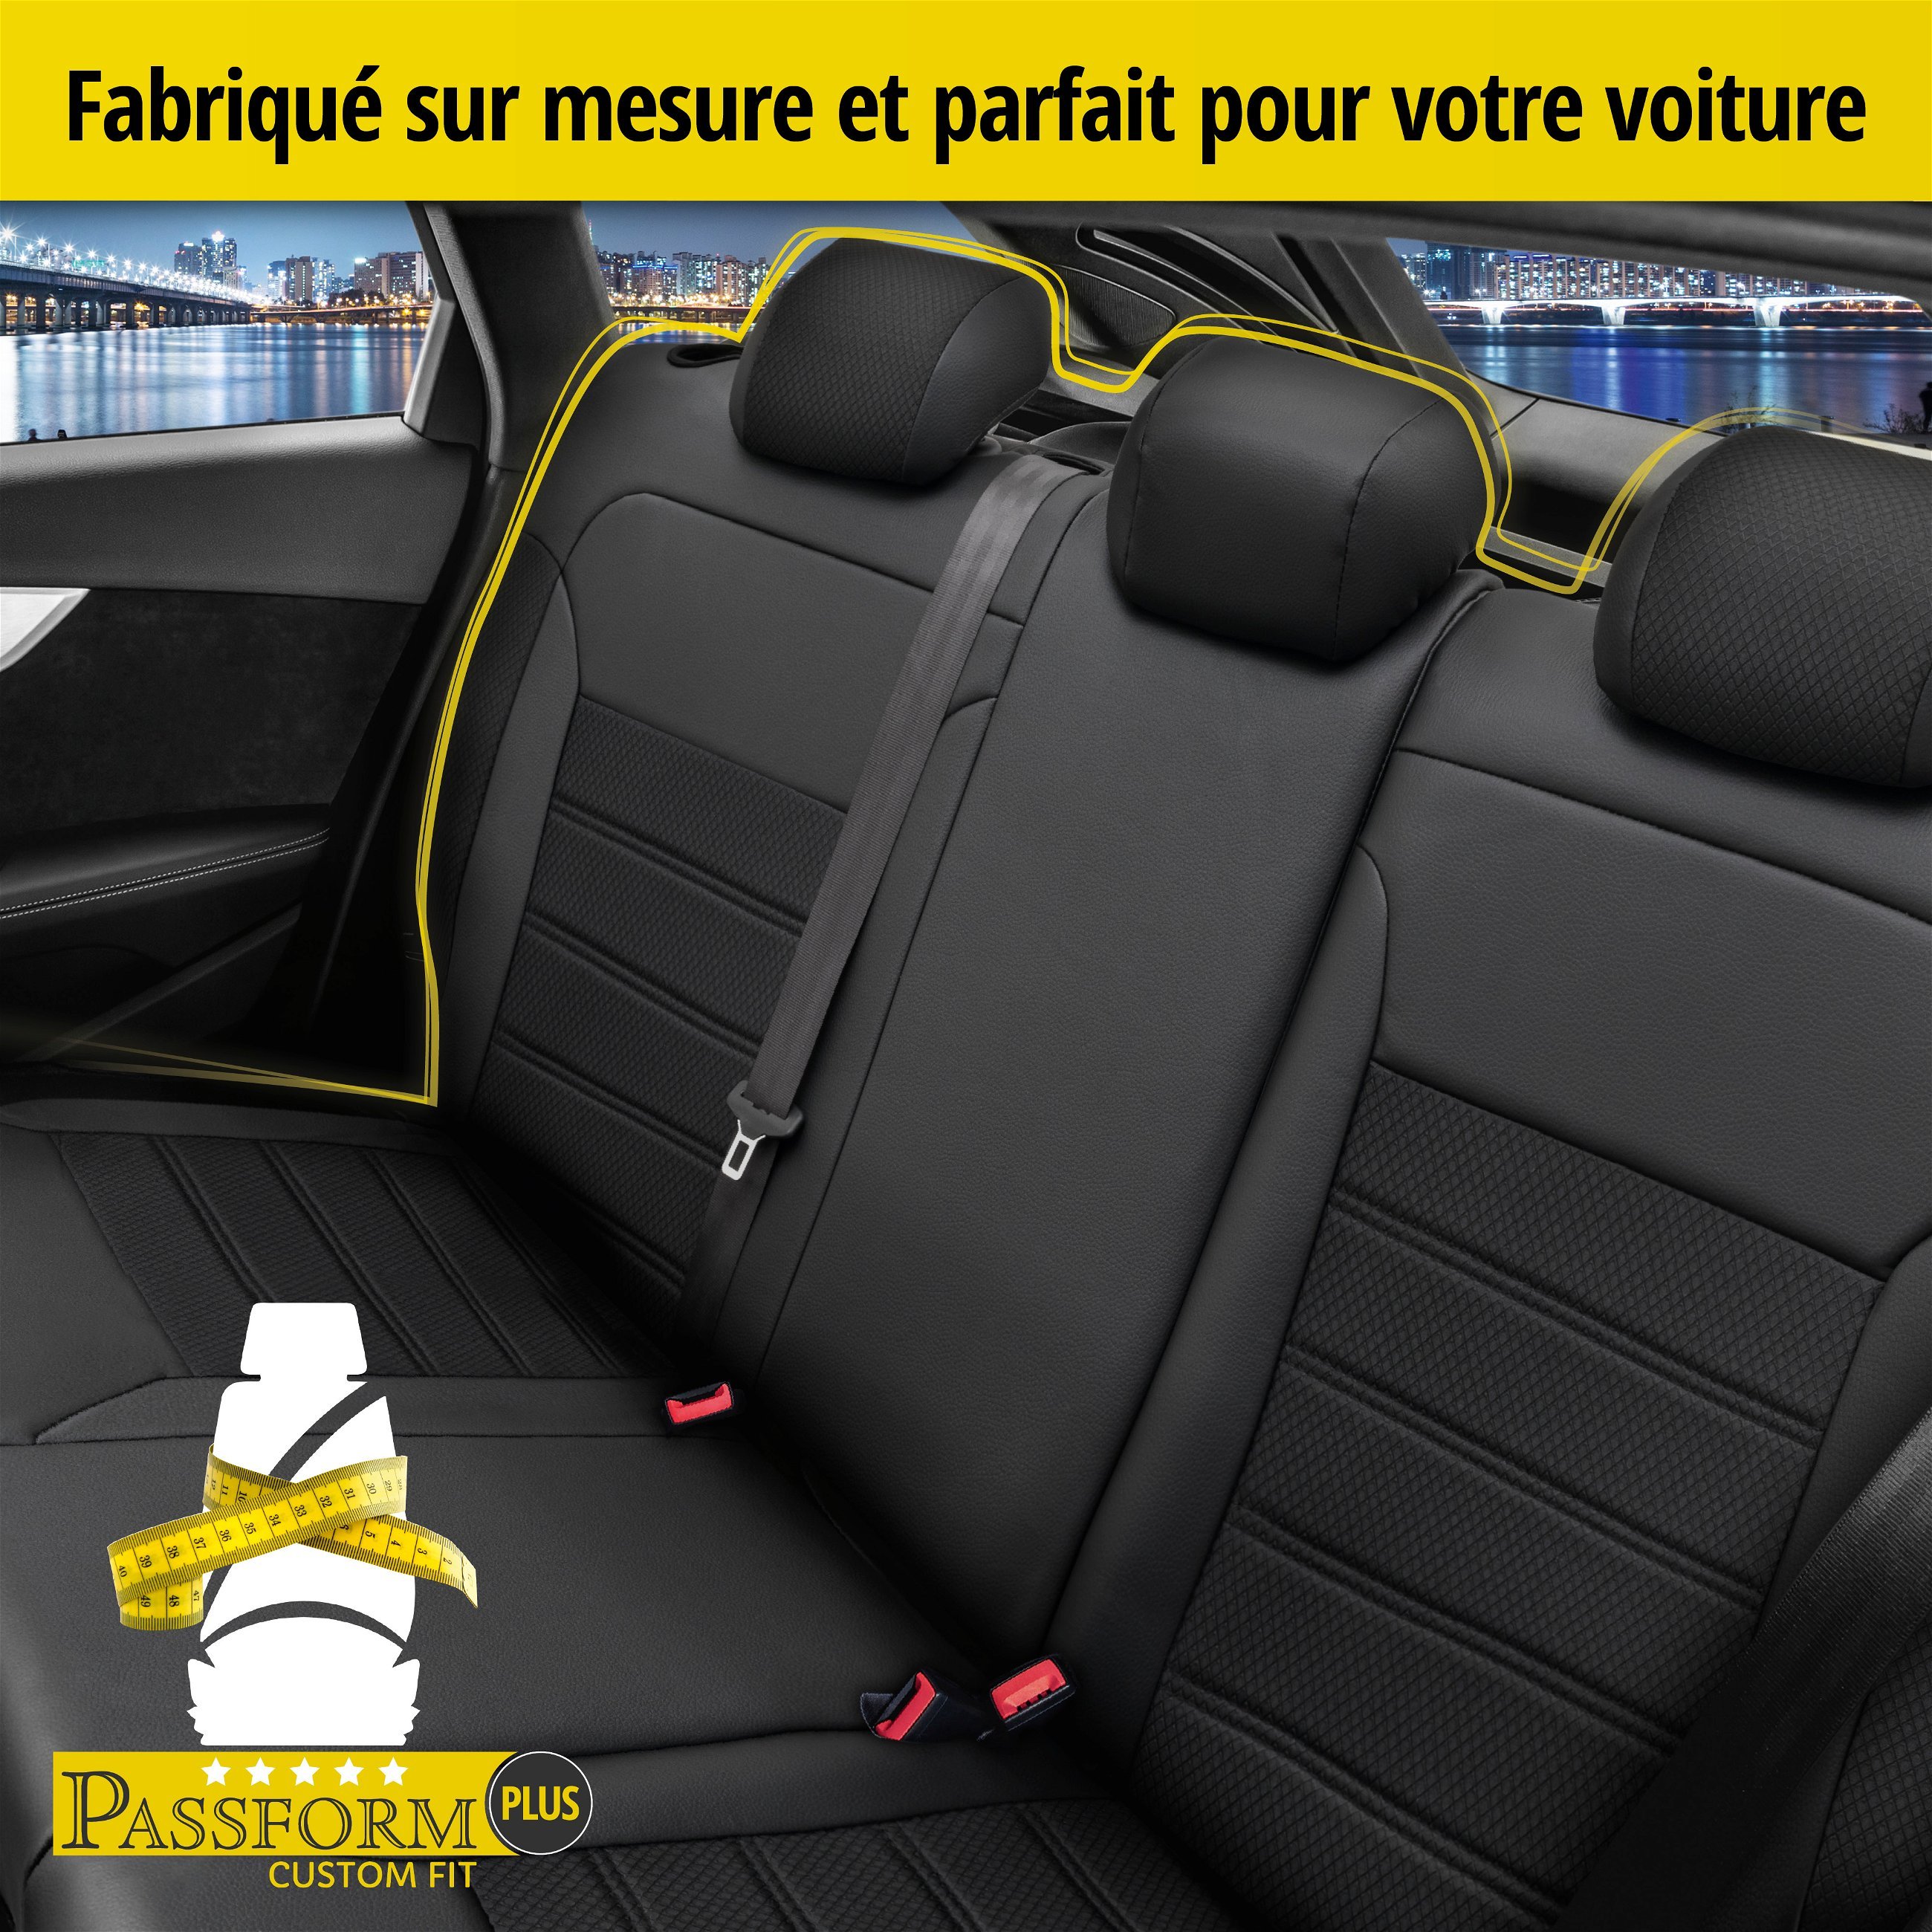 Housse de siège Aversa pour VW Passat Variant (365) 08/2010-12/2015, 1 housse de siège arrière pour les sièges normaux